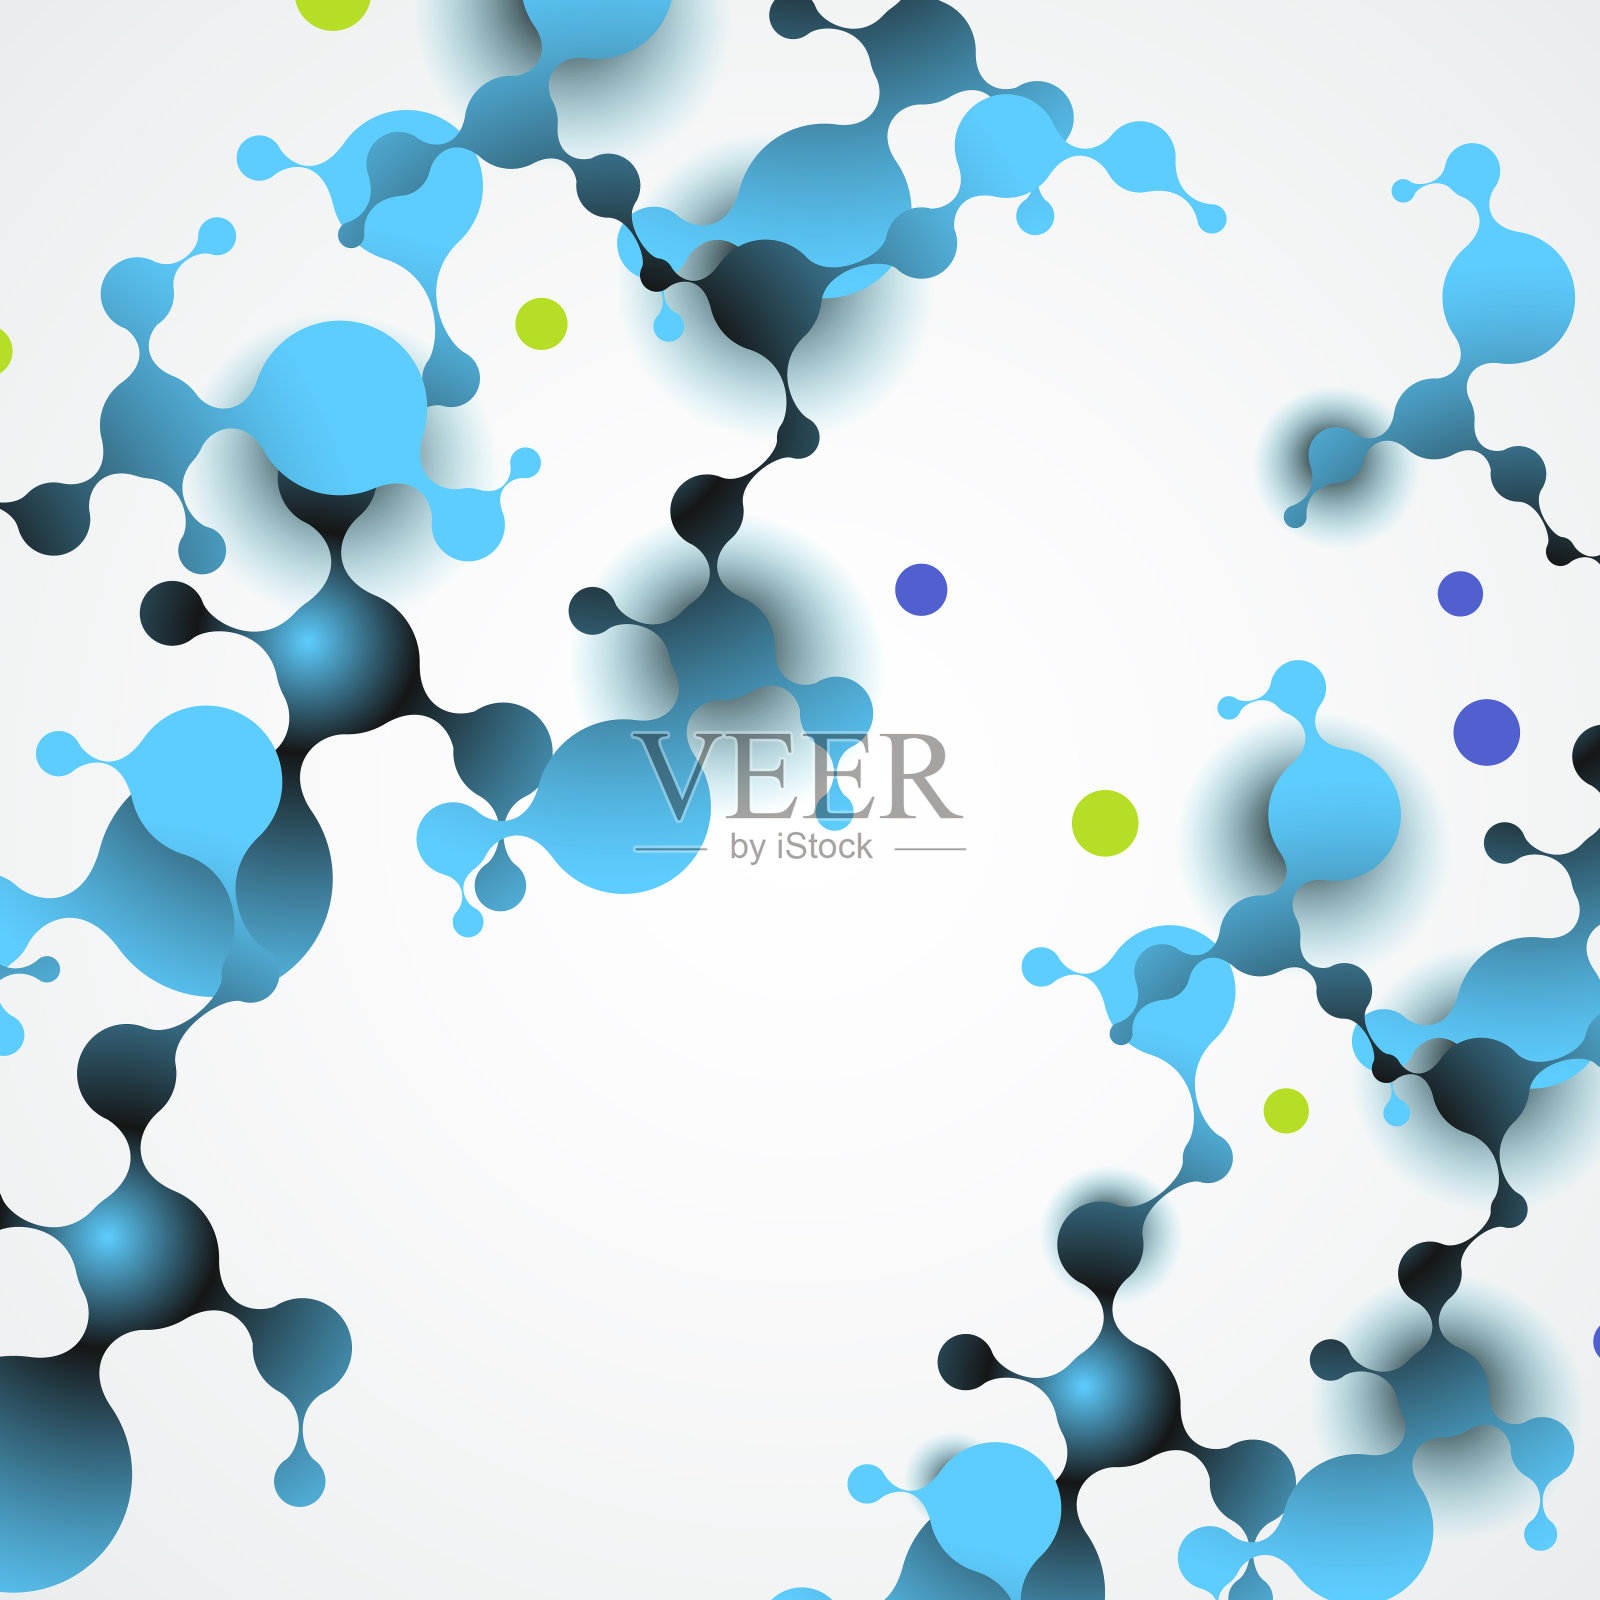 抽象分子结构与球形粒子连接。矢量图插画图片素材